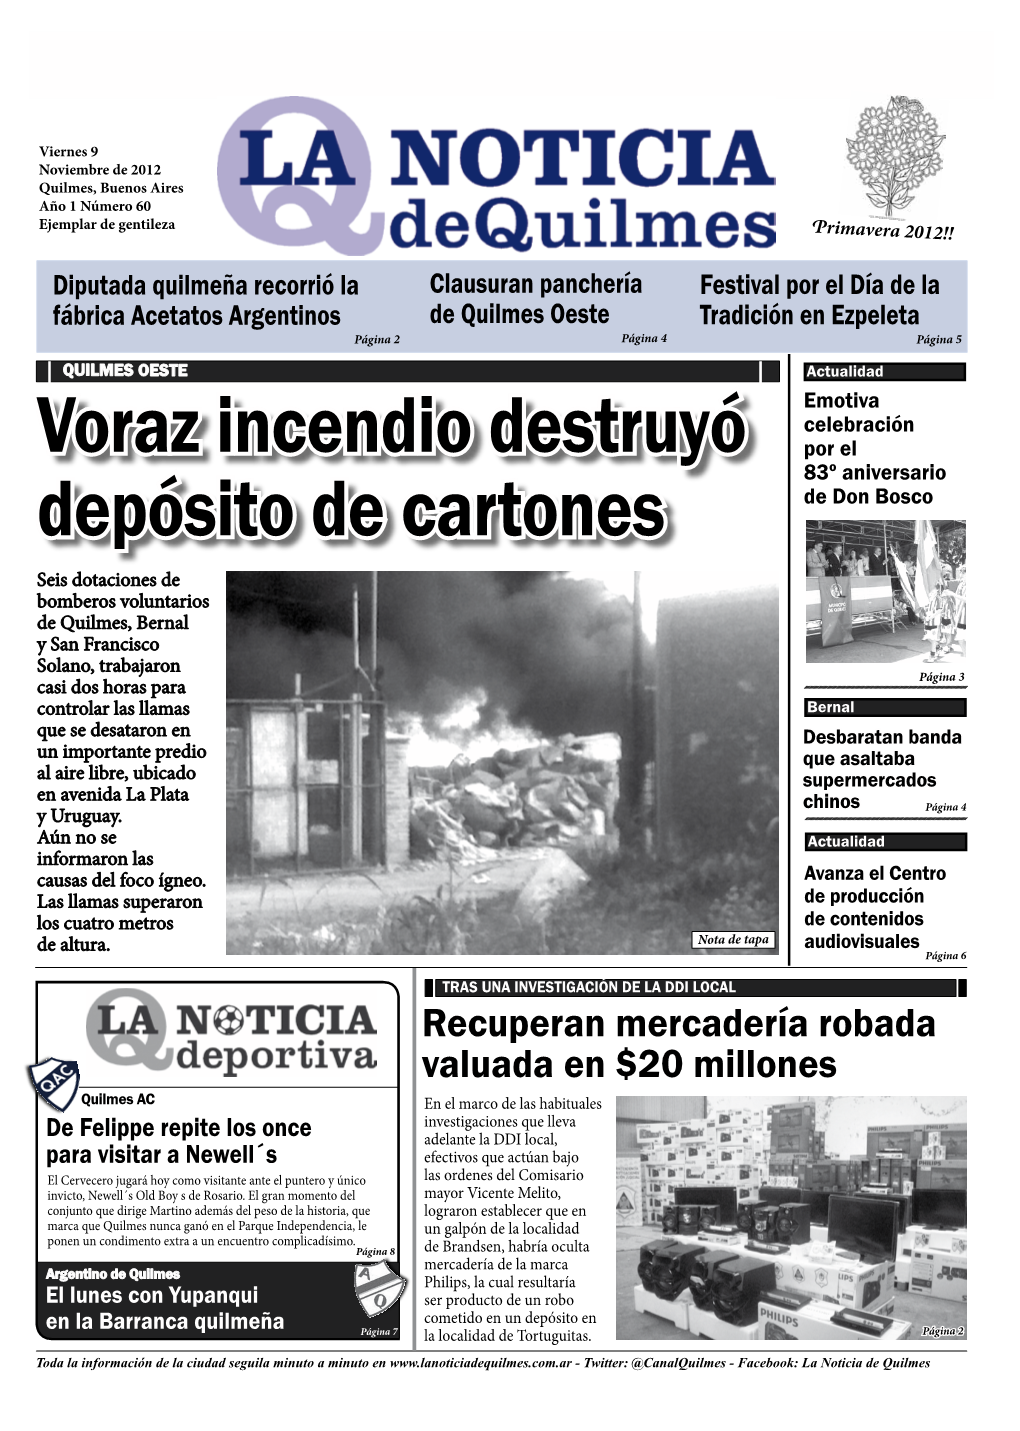 Voraz Incendio Destruyó Depósito De Cartones